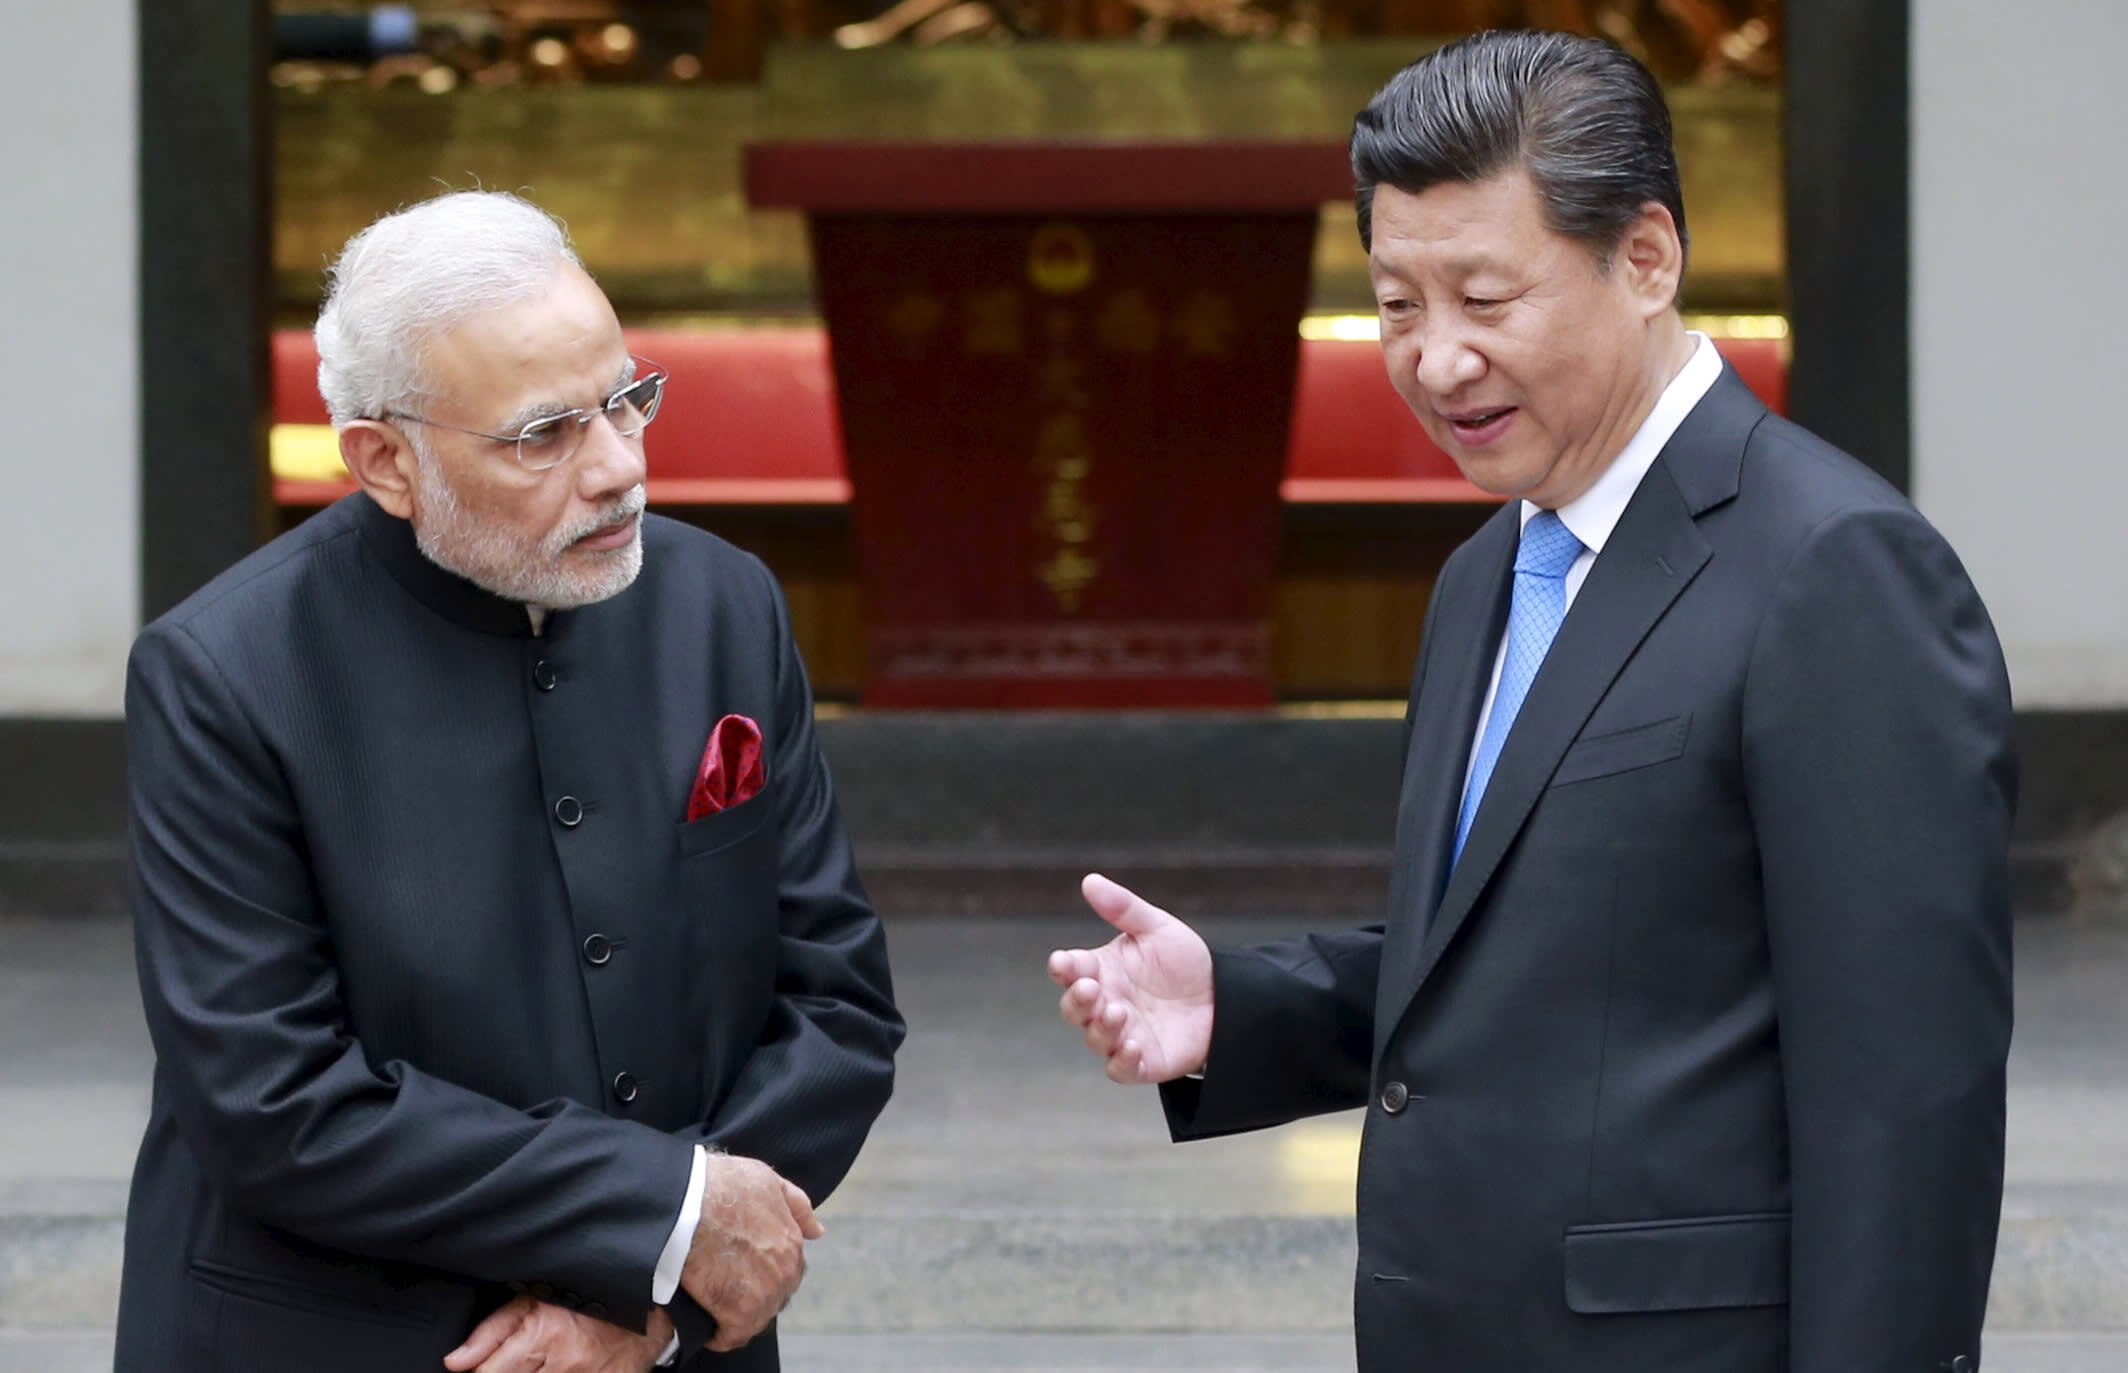 देश के 60 प्रतिशत लोगों का मानना है भारत ने चीन को मुंहतोड़ जवाब नहीं दिया